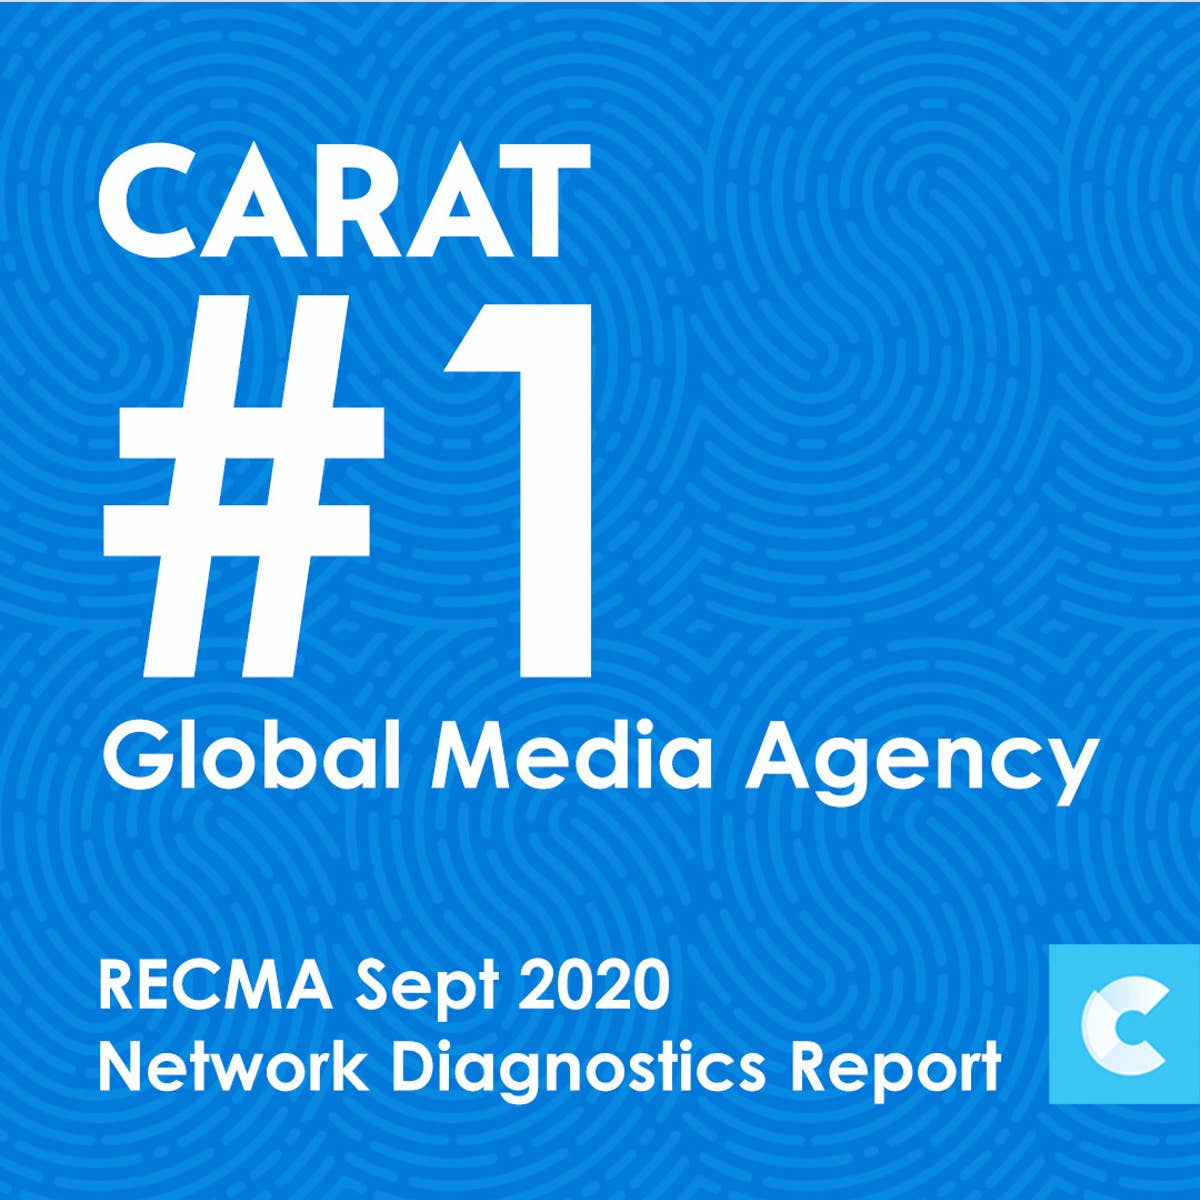 Carat ranked #1 Globally in RECMA Qualitative Diagnostics Report